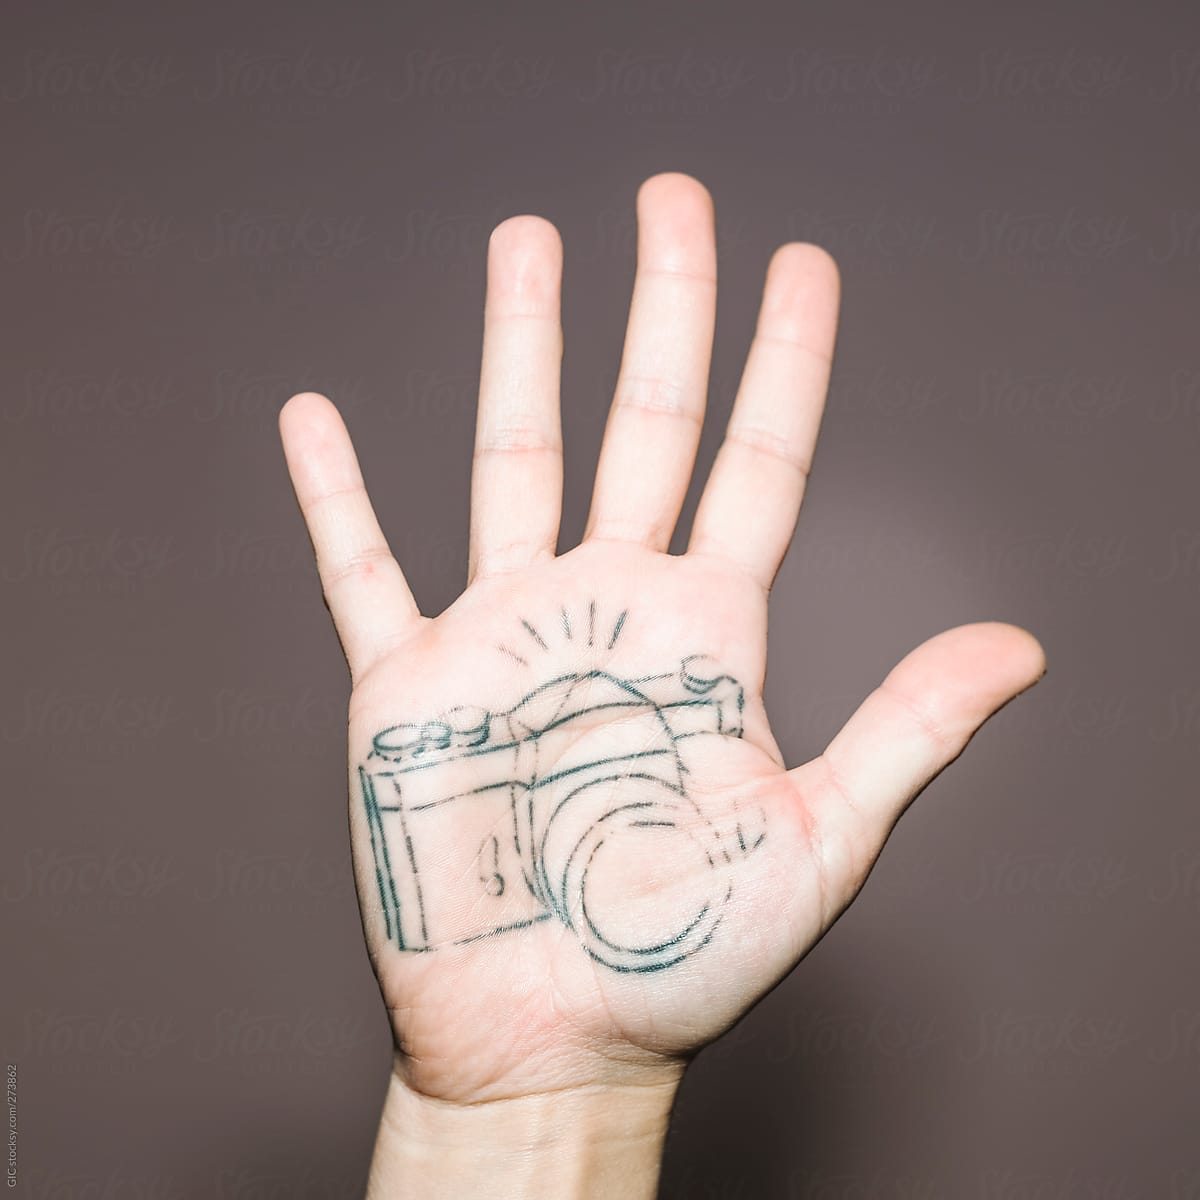 Pentax 35mm Camera Tattoo | Fstoppers